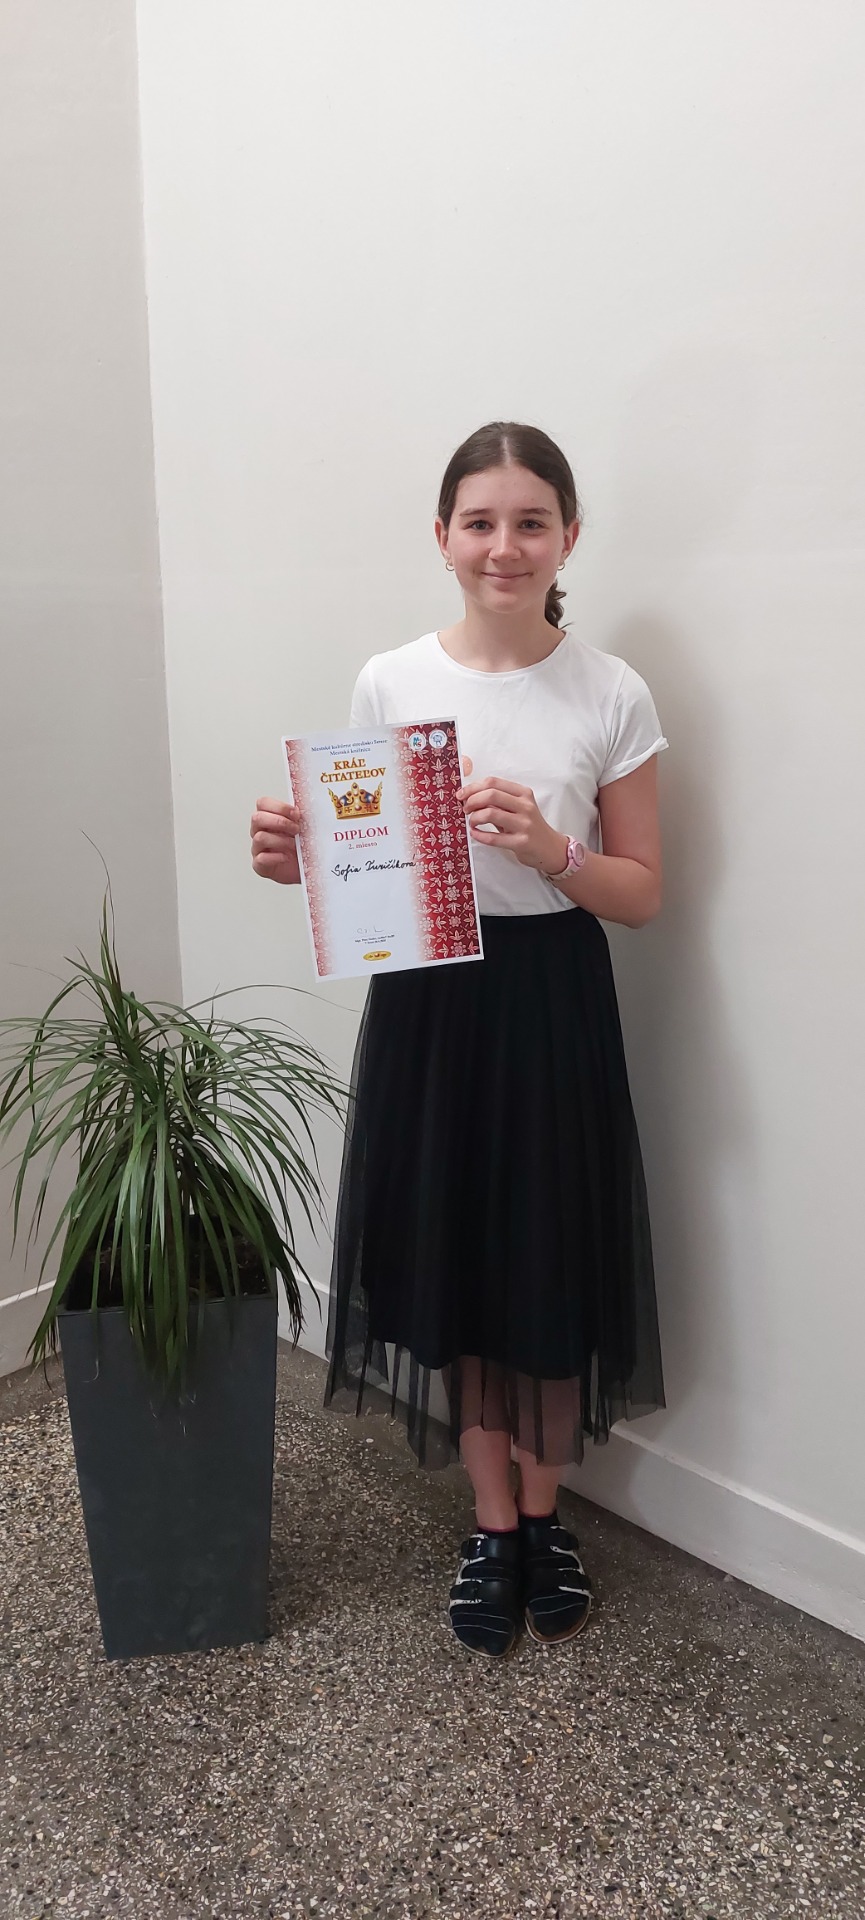 Sofia získala 2. miesto v súťaži Kráľ detských čitateľov